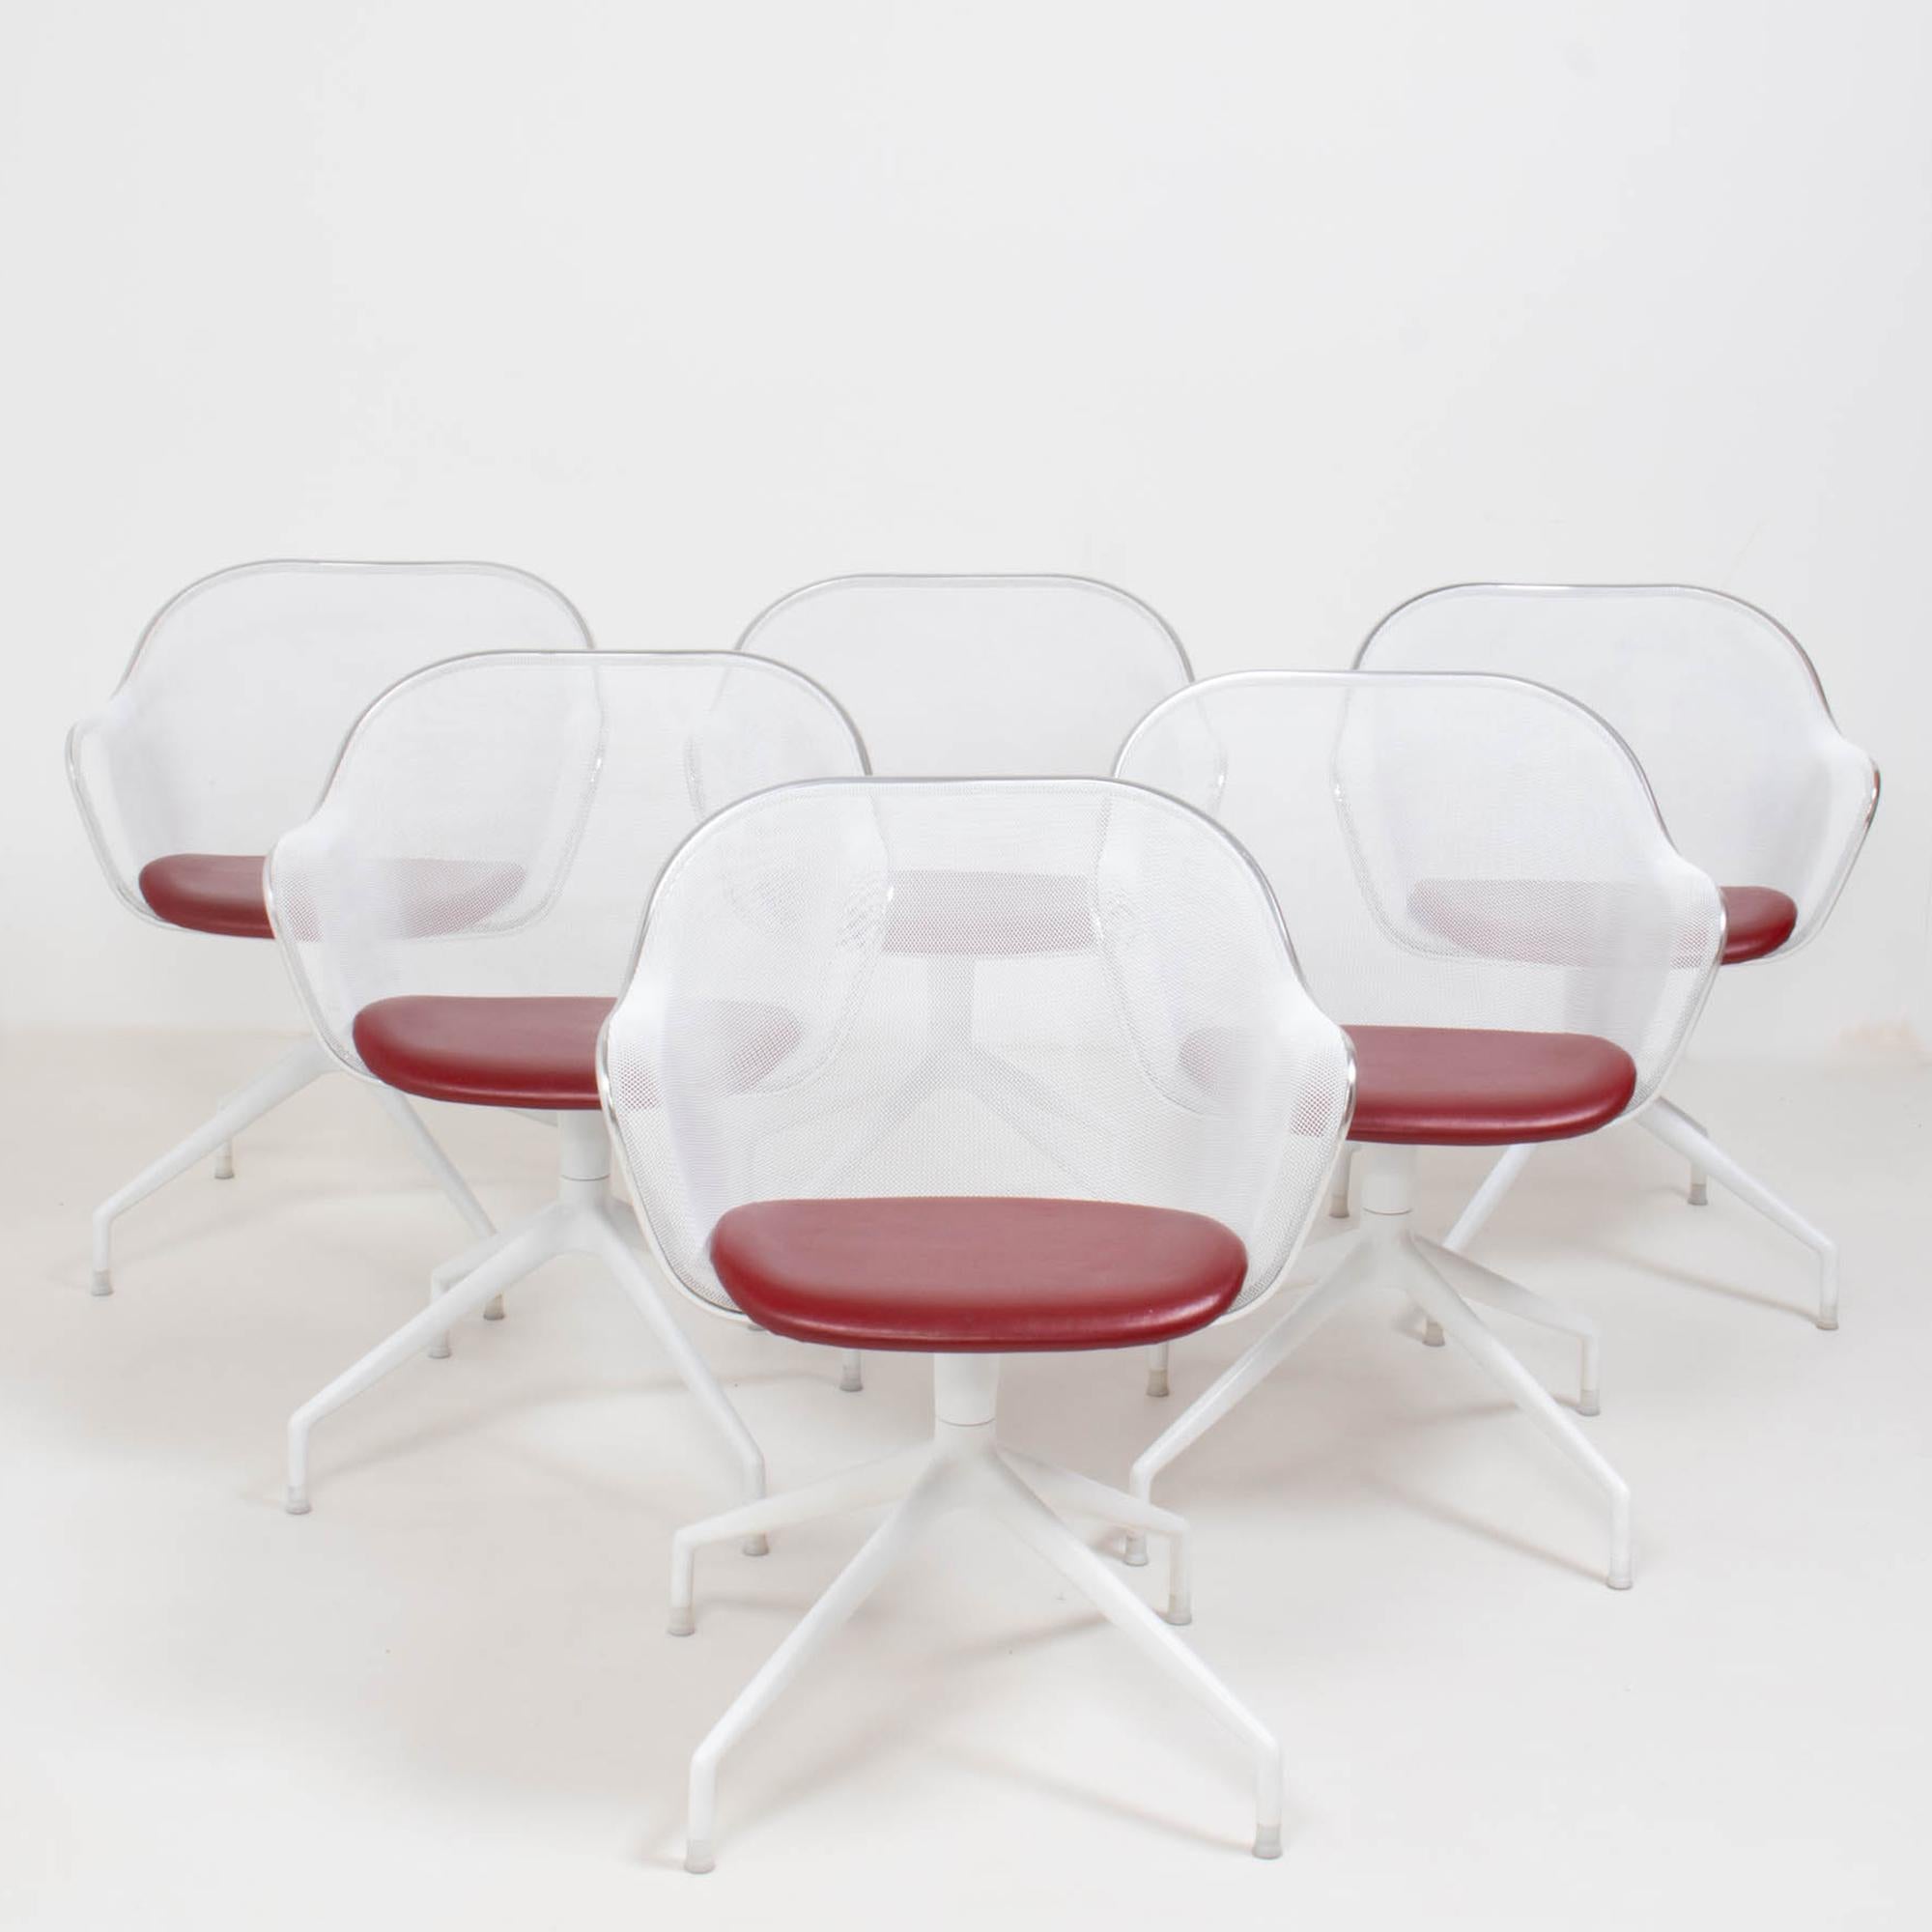 Der von Antonio Citterio im Jahr 2000 für B&B Italia entworfene Esszimmerstuhl Luta ist zu einer Ikone für die Marke geworden.

Die Stühle bestehen aus einem leichten, weiß gespritzten Stahlgeflecht und sind mit einem kontrastierenden